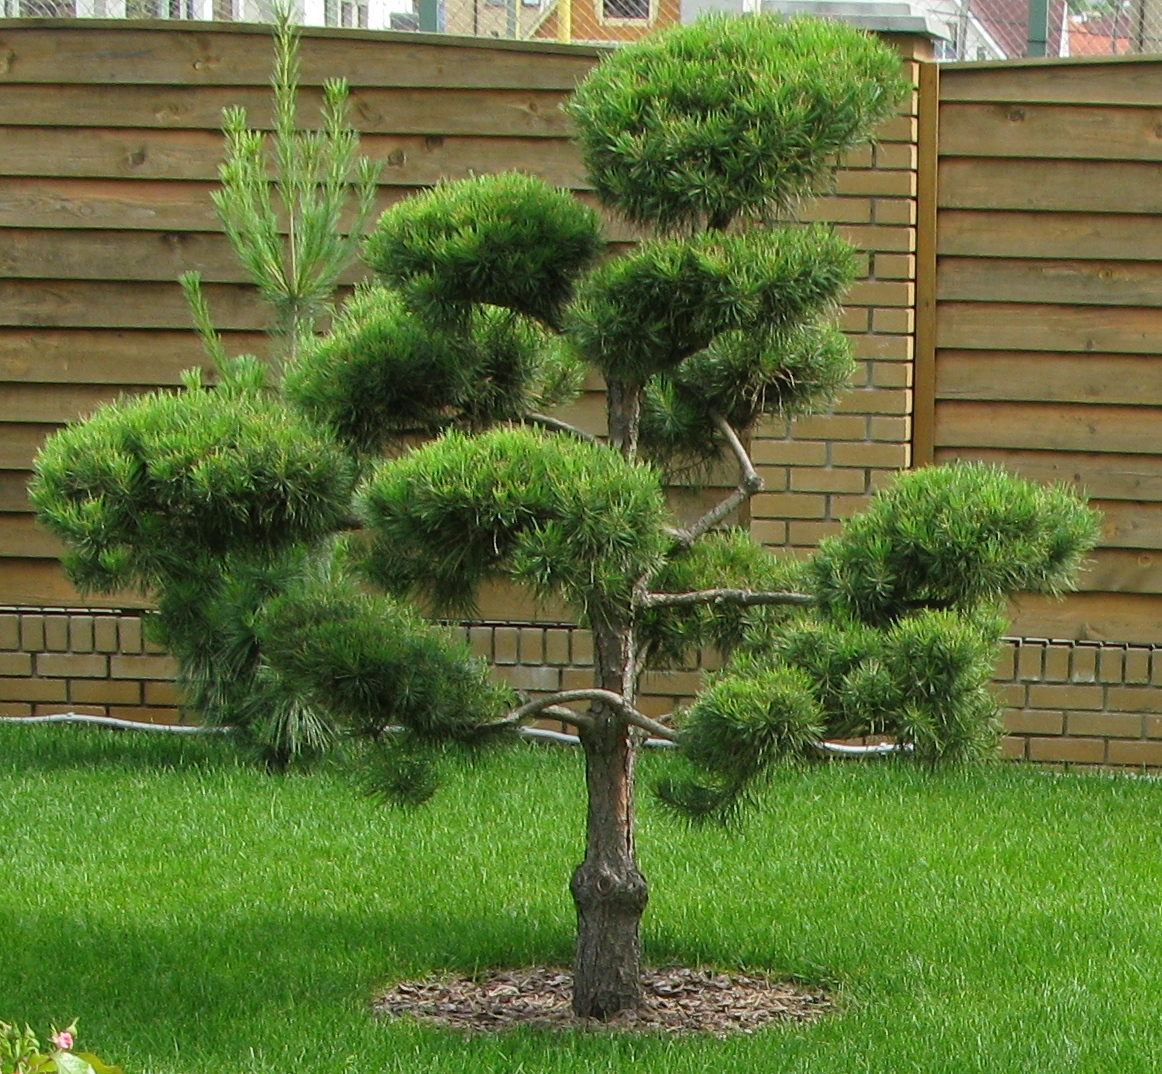 Садовый бонсай. Это дикое для японцев словосочетание стойко укоренилось в практической терминологии. Особенно гордо оно звучит на польском – bonsai ogorodowy.